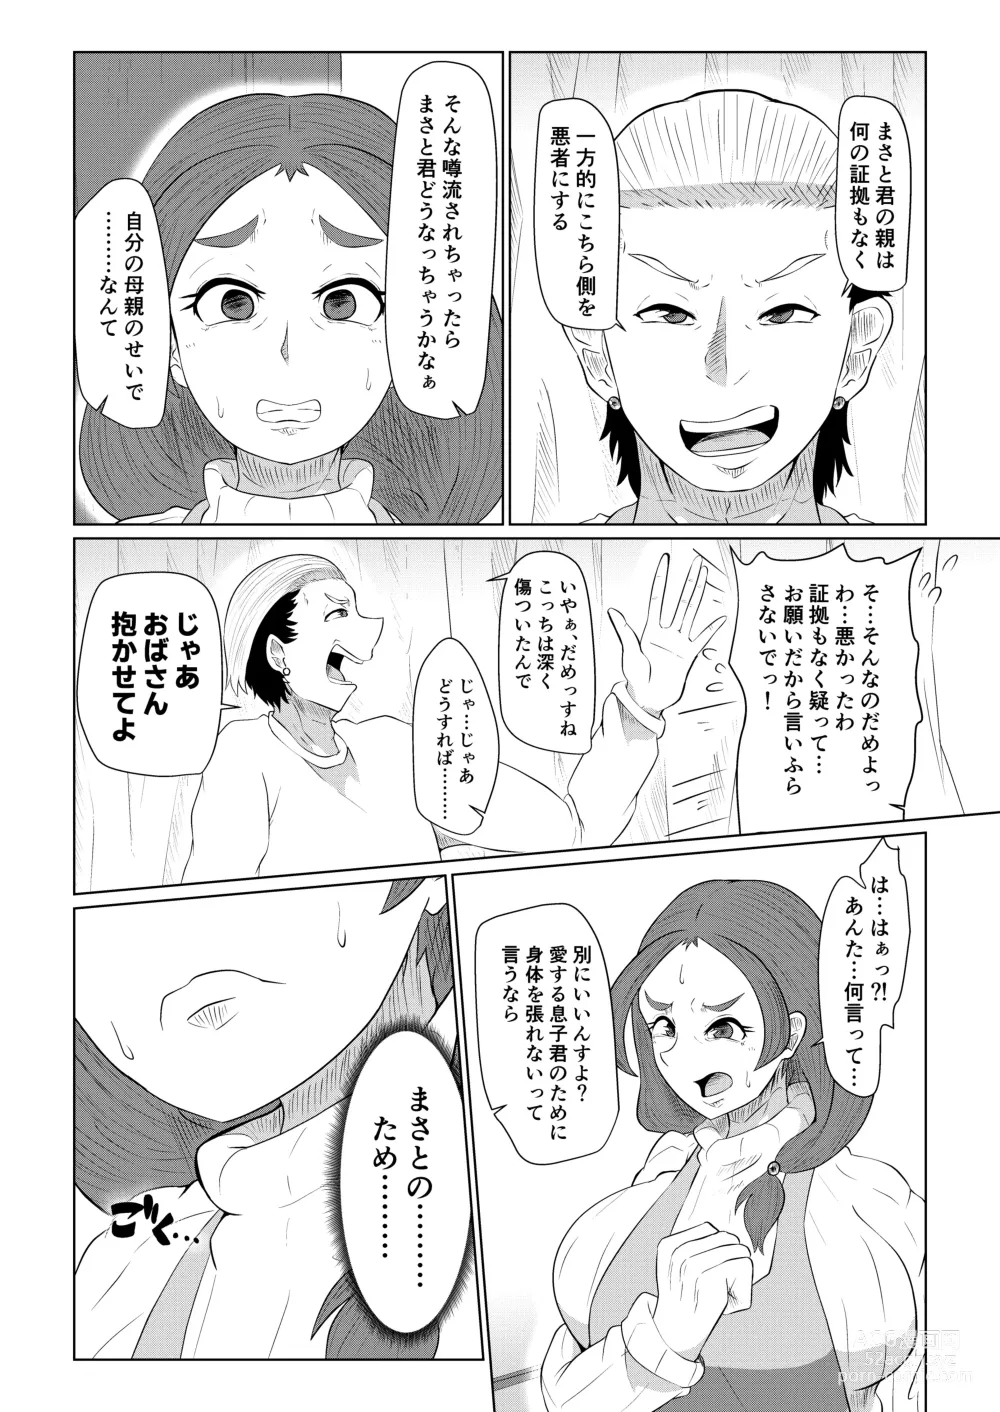 Page 7 of doujinshi Doushite Aitsu nanka ni...